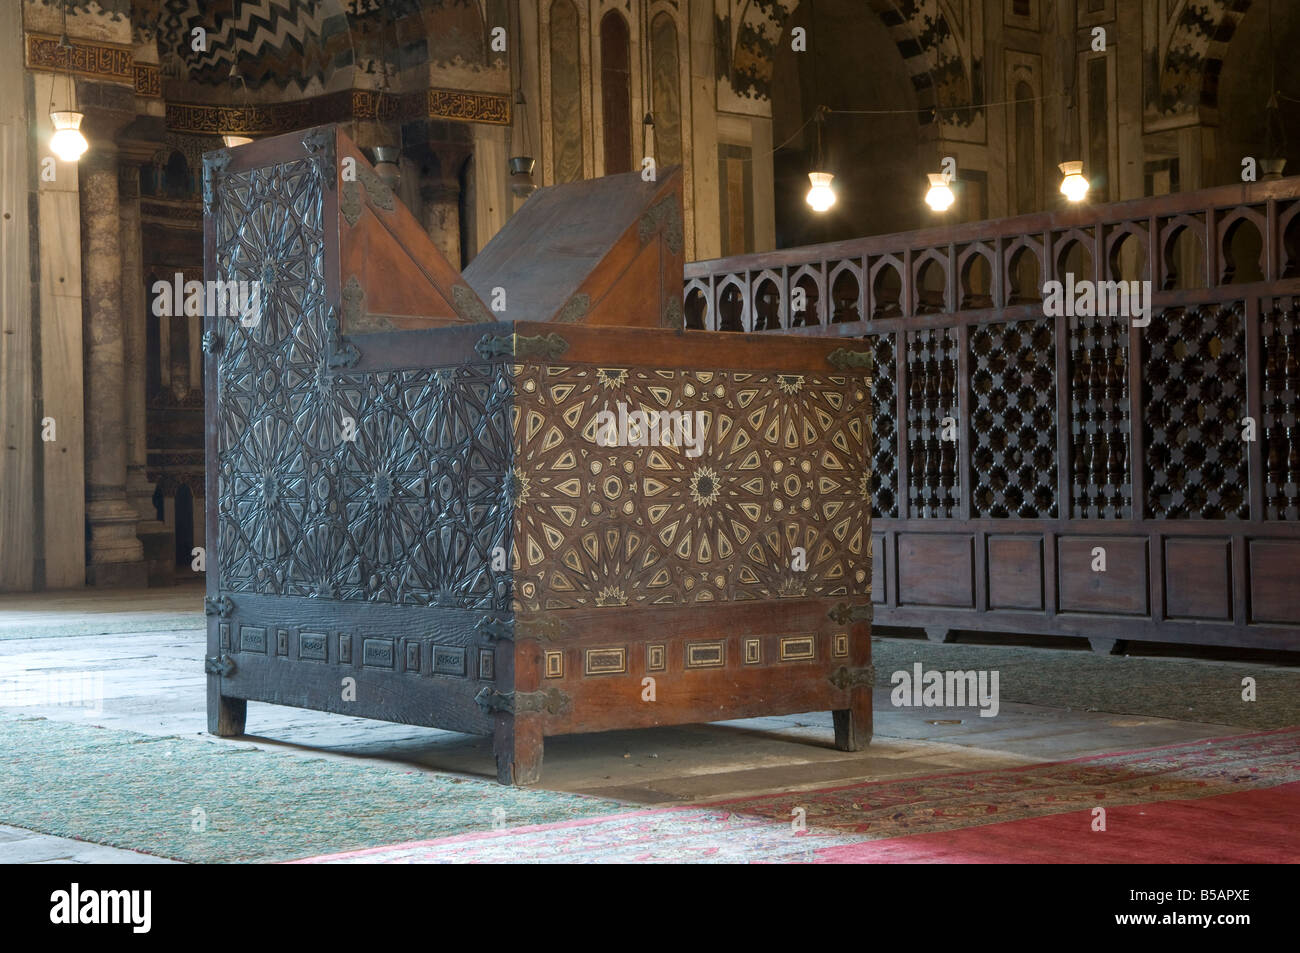 Holzarbeit in Arabesque Dekorationen innen Mosque-Madrassa der Sultan Hassan in Kairo Ägypten entfernt Stockfoto